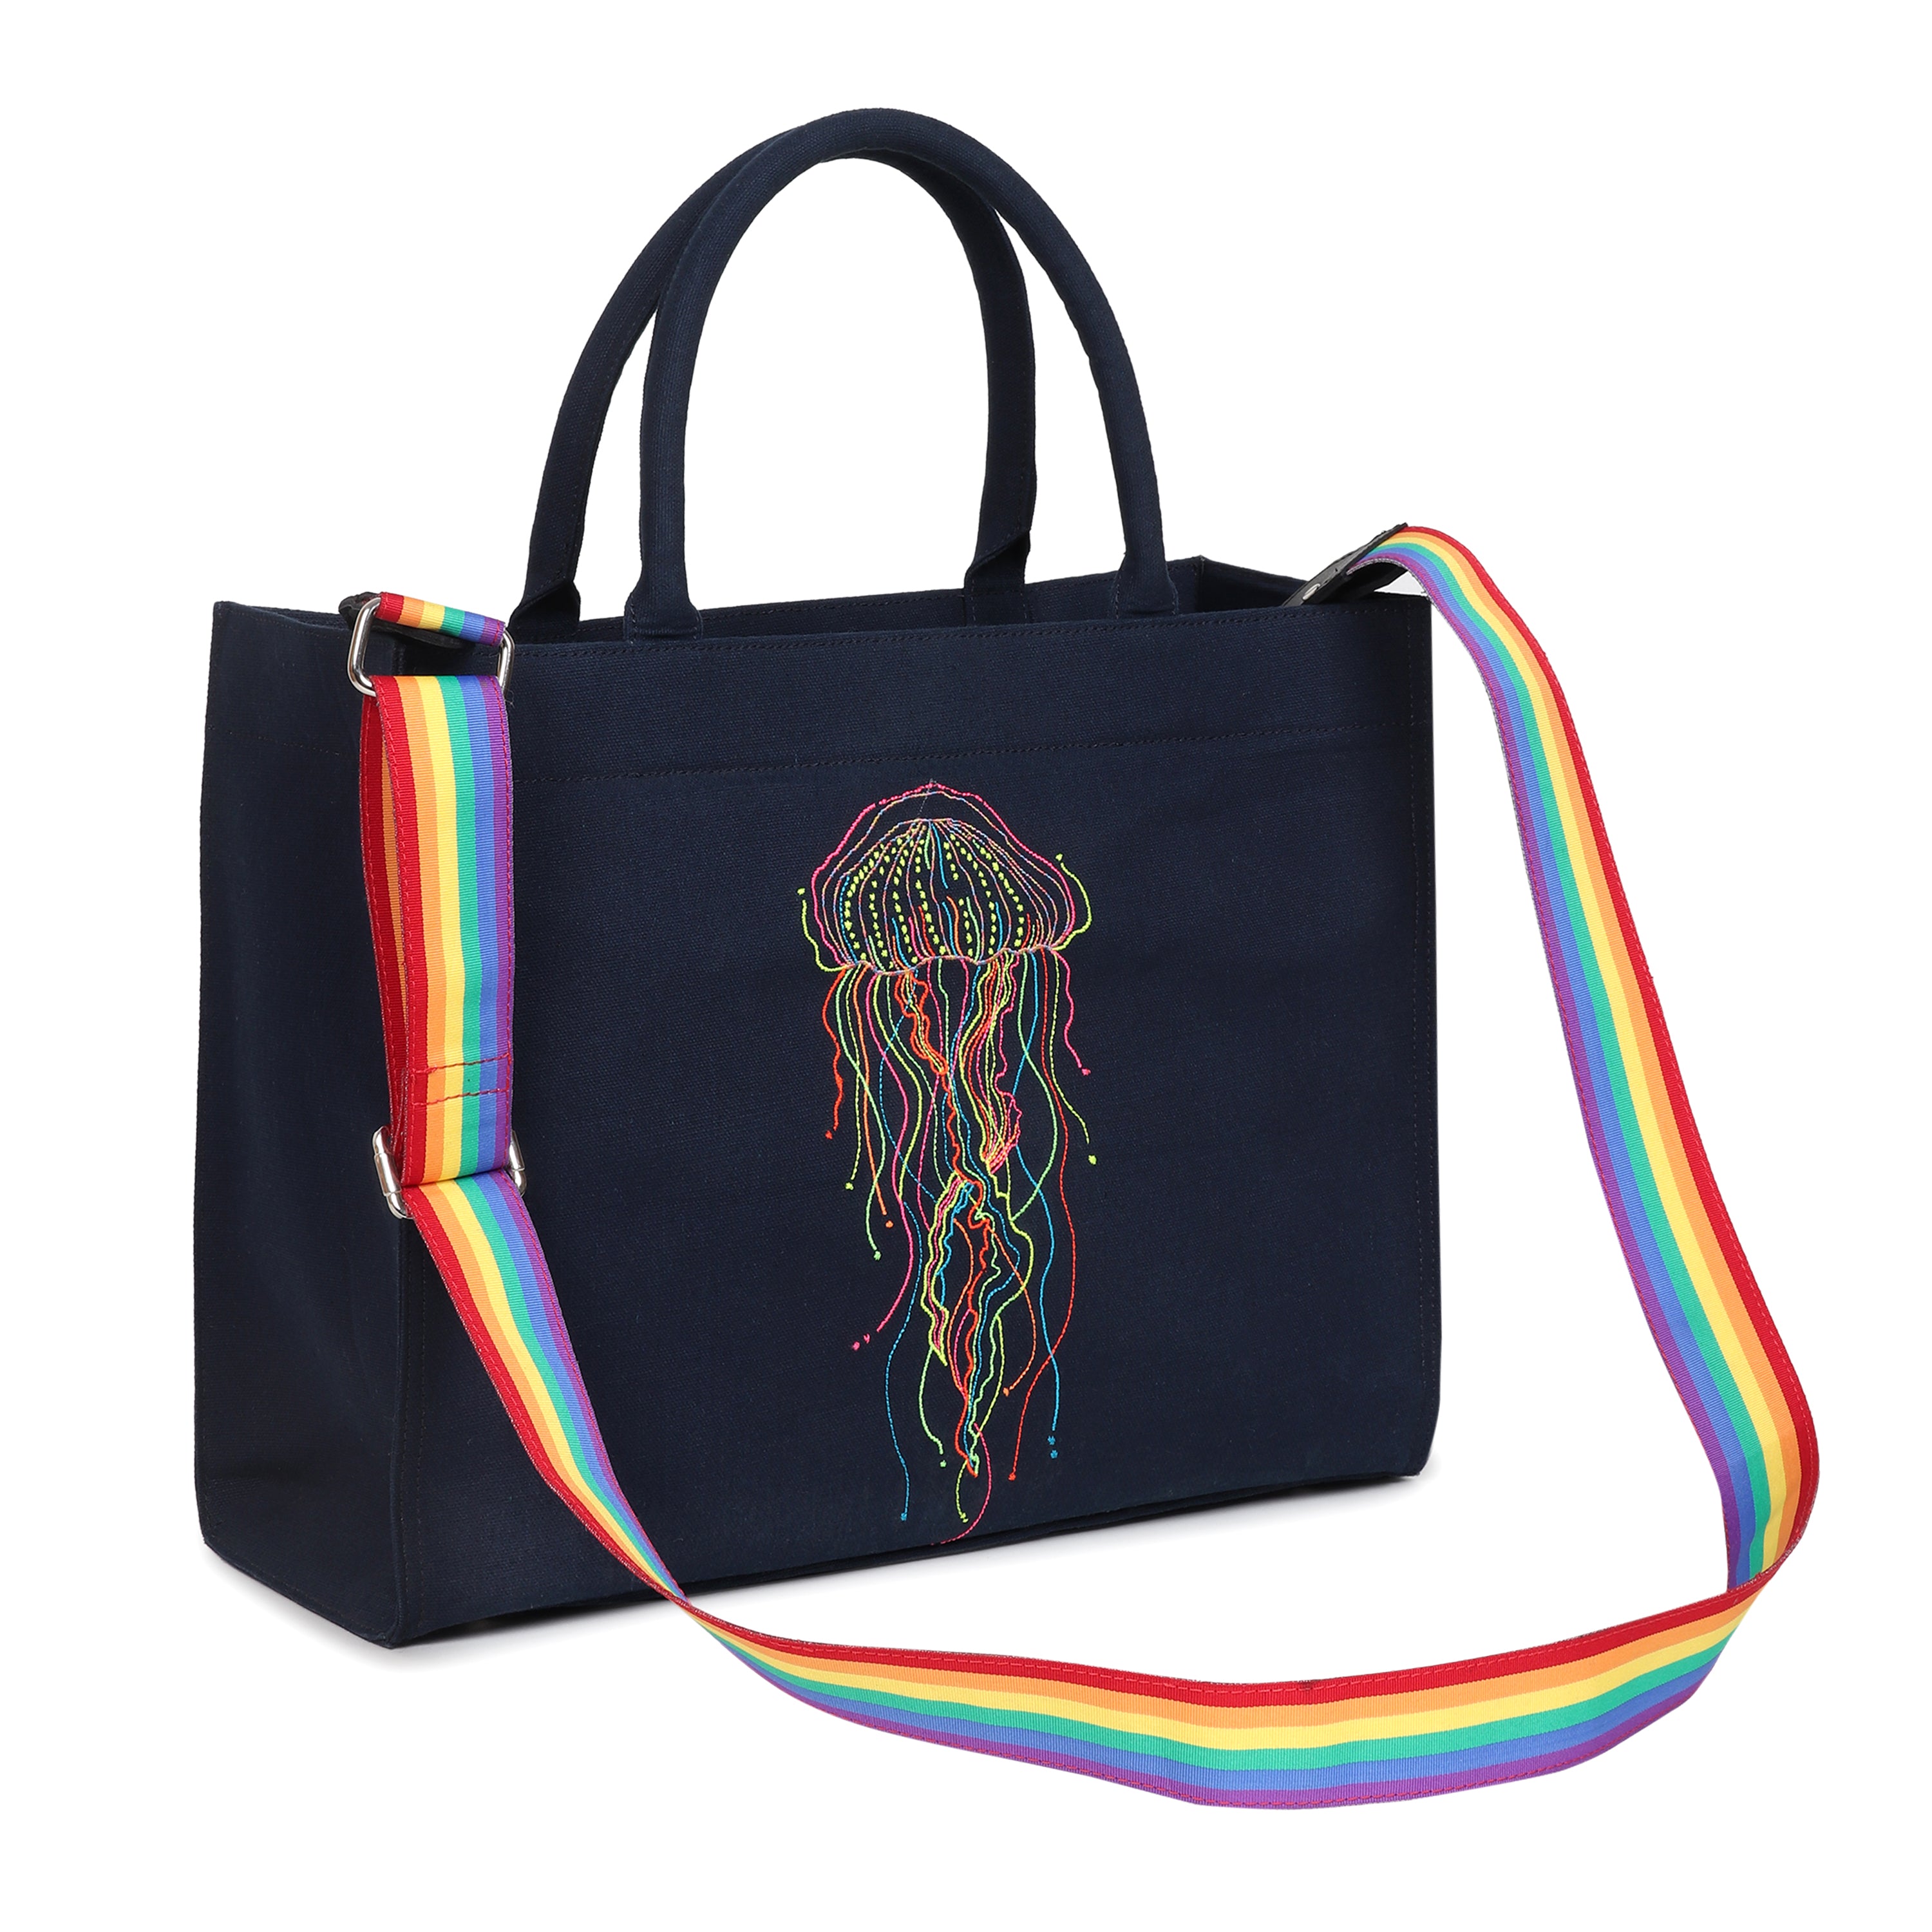 Jellyfish handbag - Large